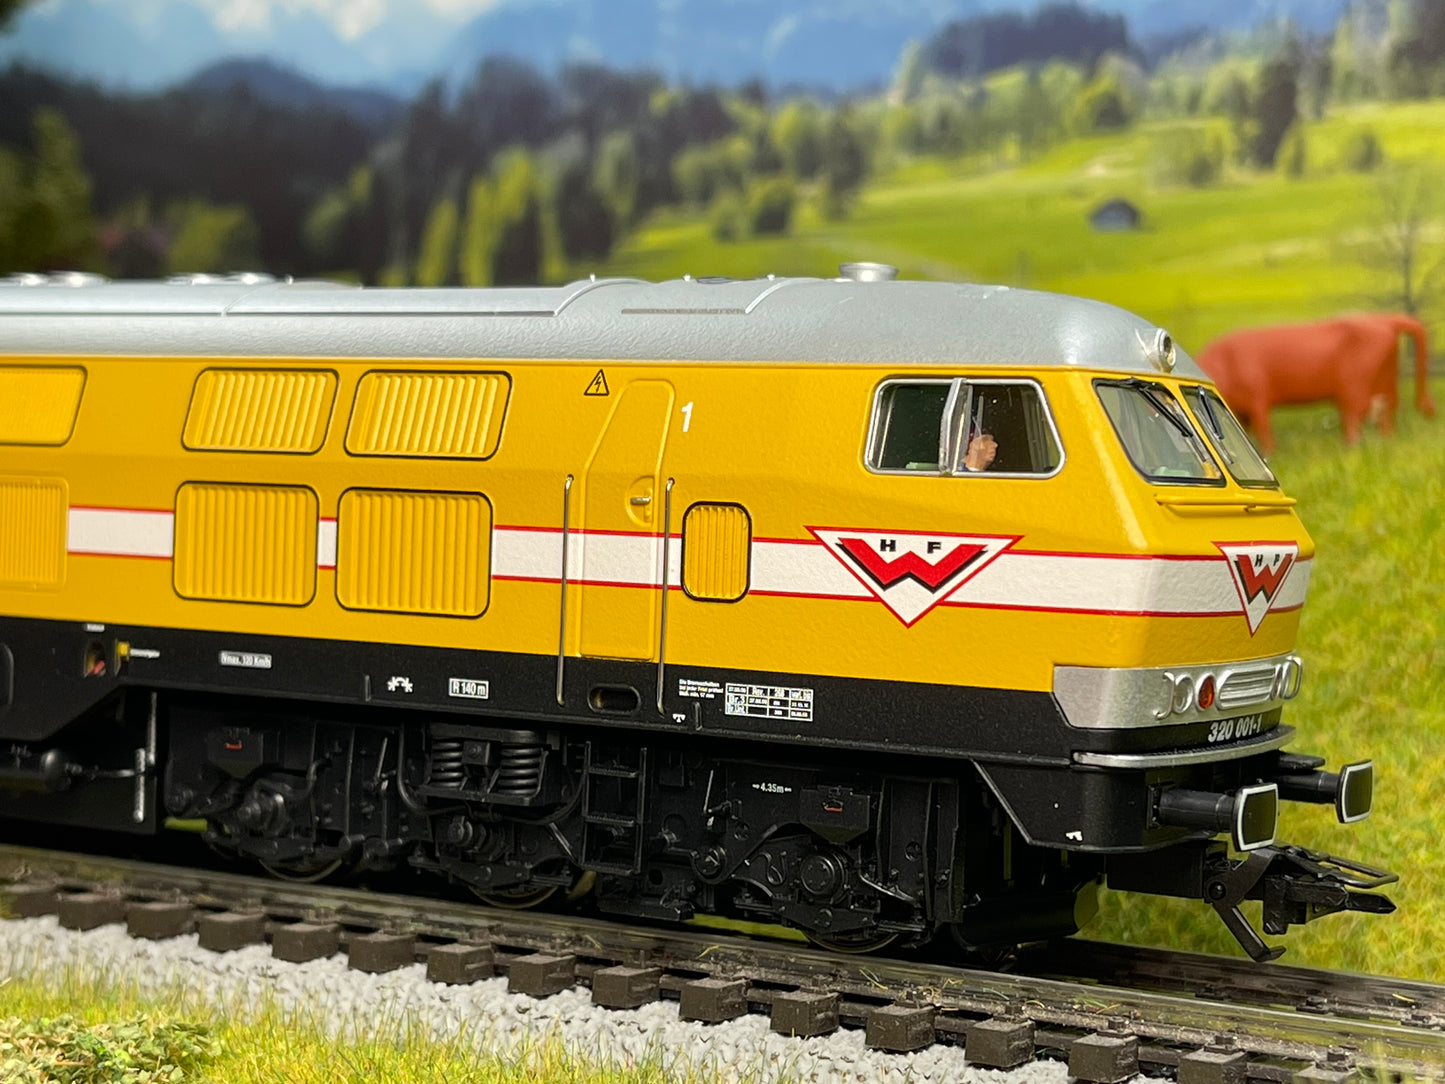 Marklin 39321 - Class V 320 Diesel Locomotive "Wiebe"